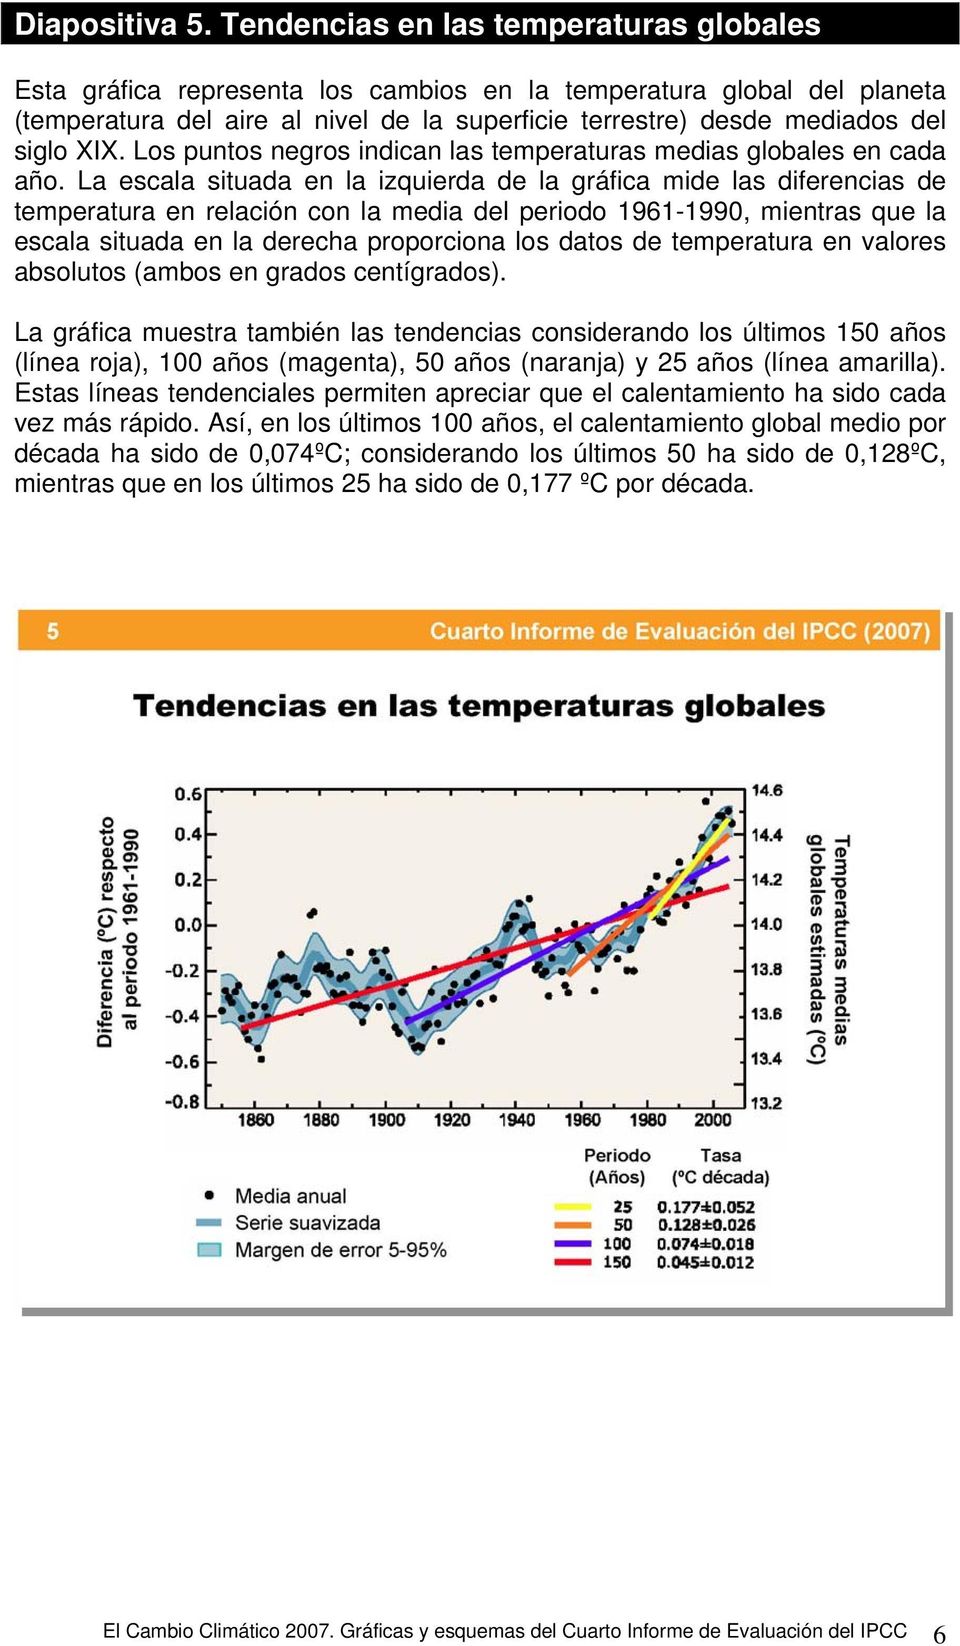 XIX. Los puntos negros indican las temperaturas medias globales en cada año.